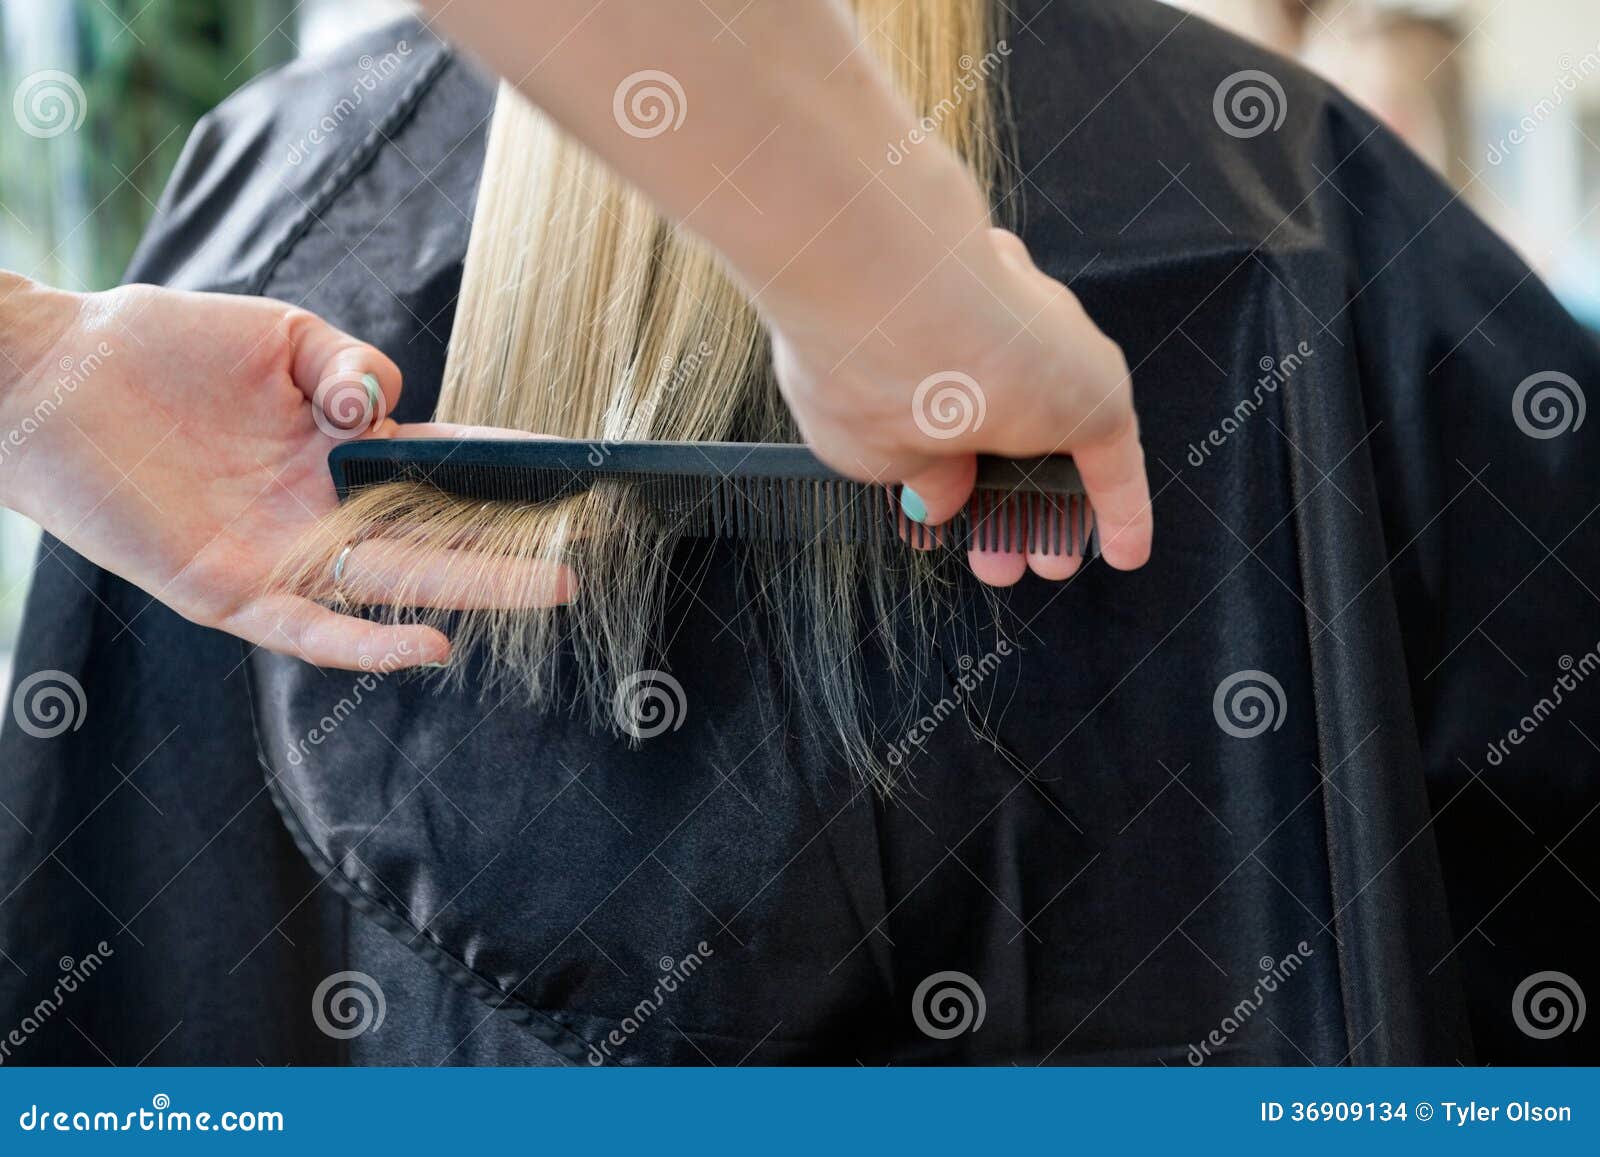 Frisör som kammar hår av kunden. Frisör som kammar hår av en blond kvinnlig kund för frisyr på salongen